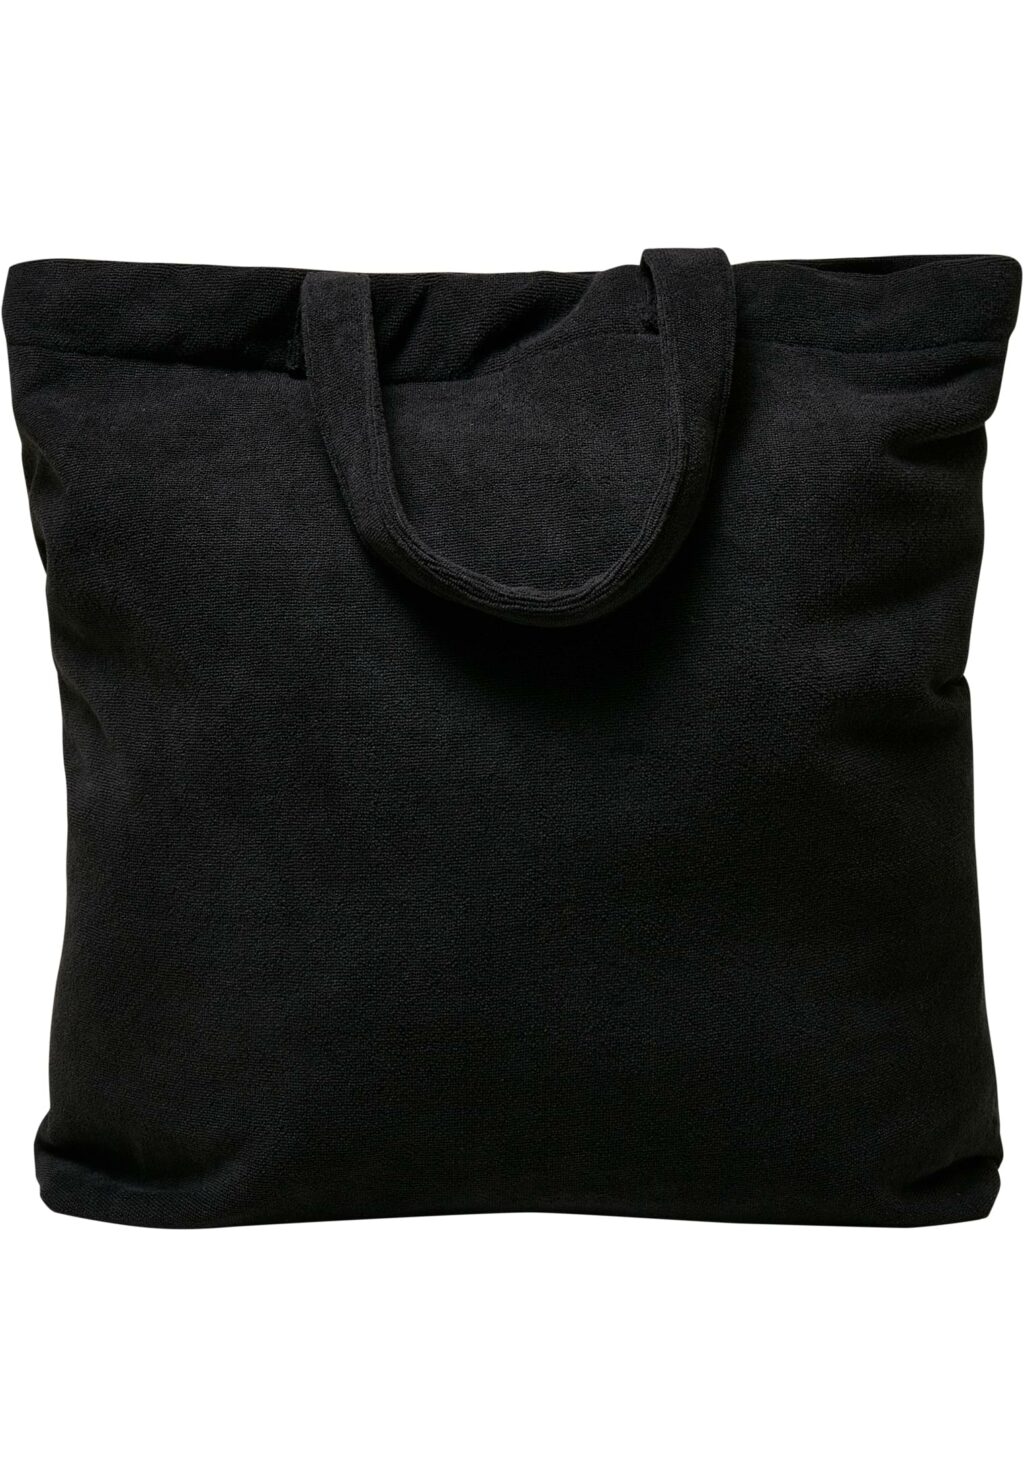 SLAY DIY Terry Tote Bag black one MT2262